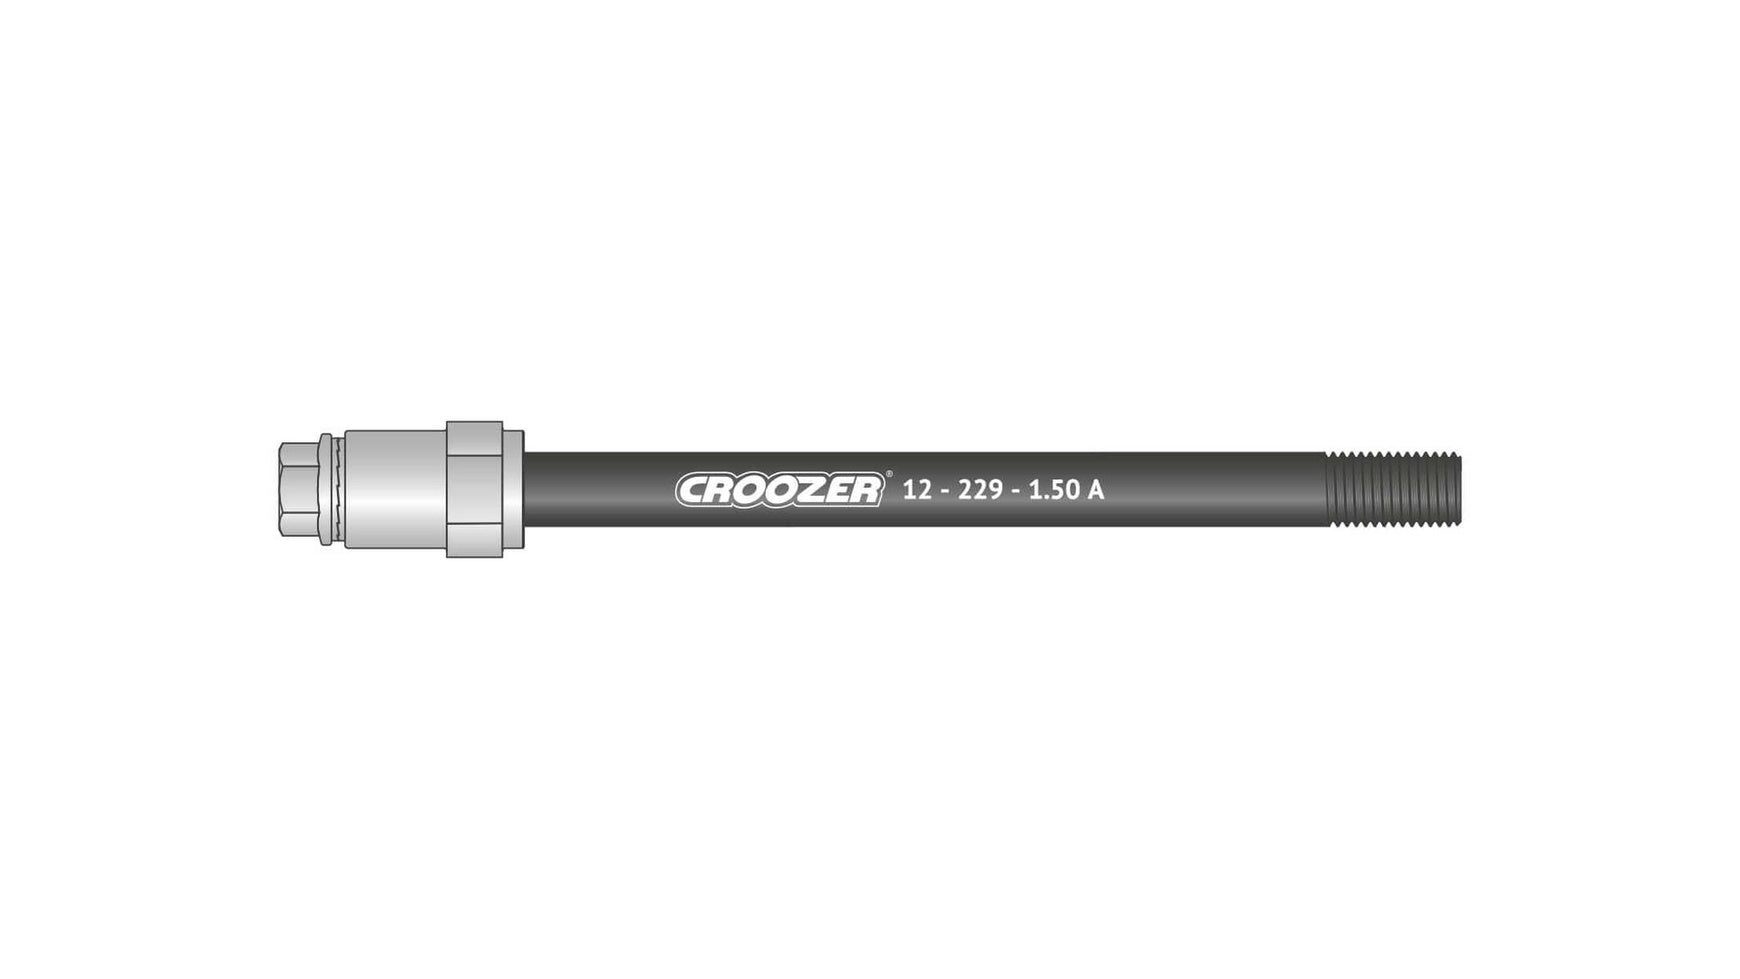 Croozer 12-229-1.50 A von CROOZER